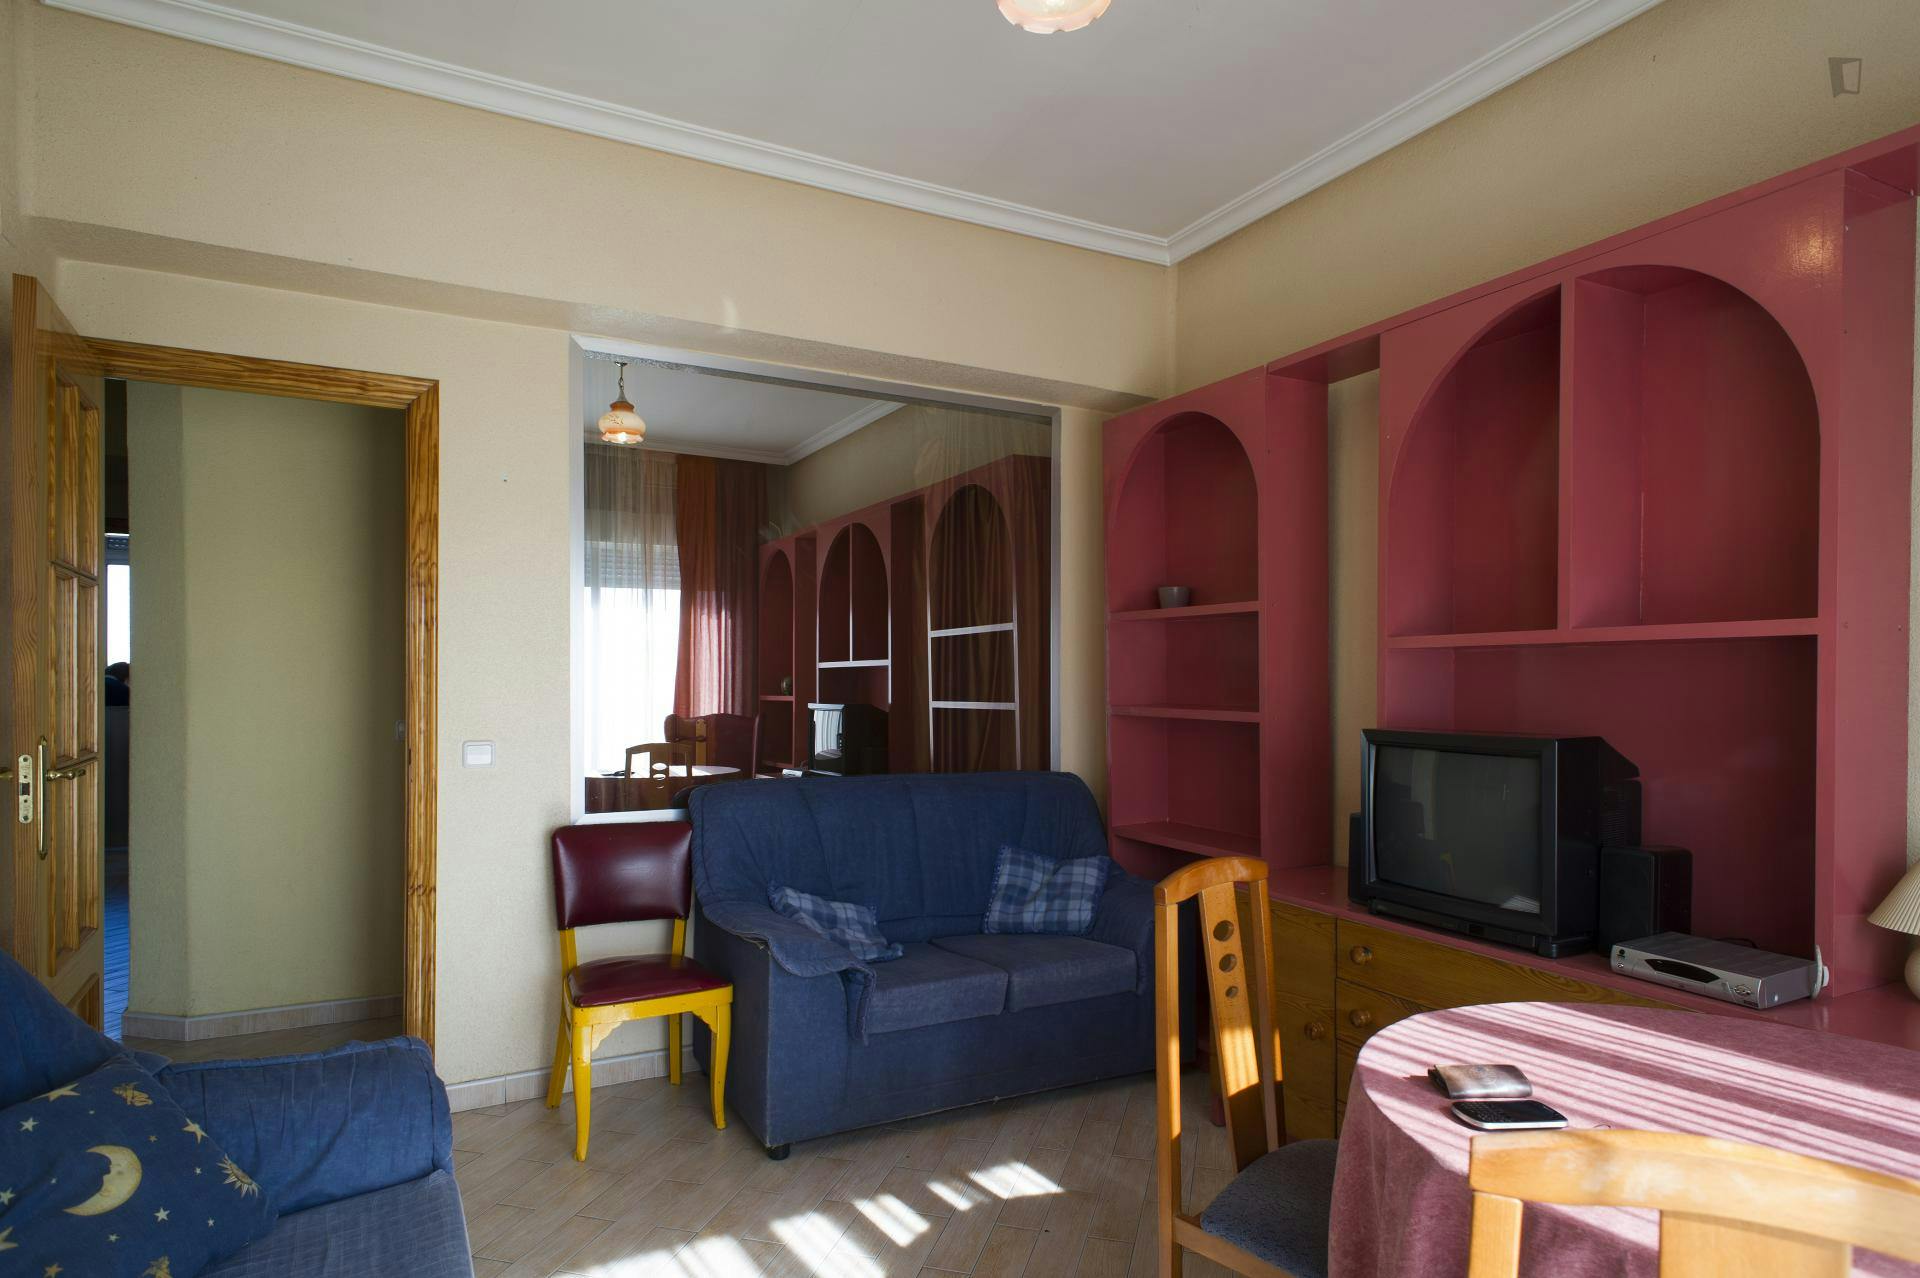 Typical and cosy 3-bedroom apartment near Parque de las Salesas